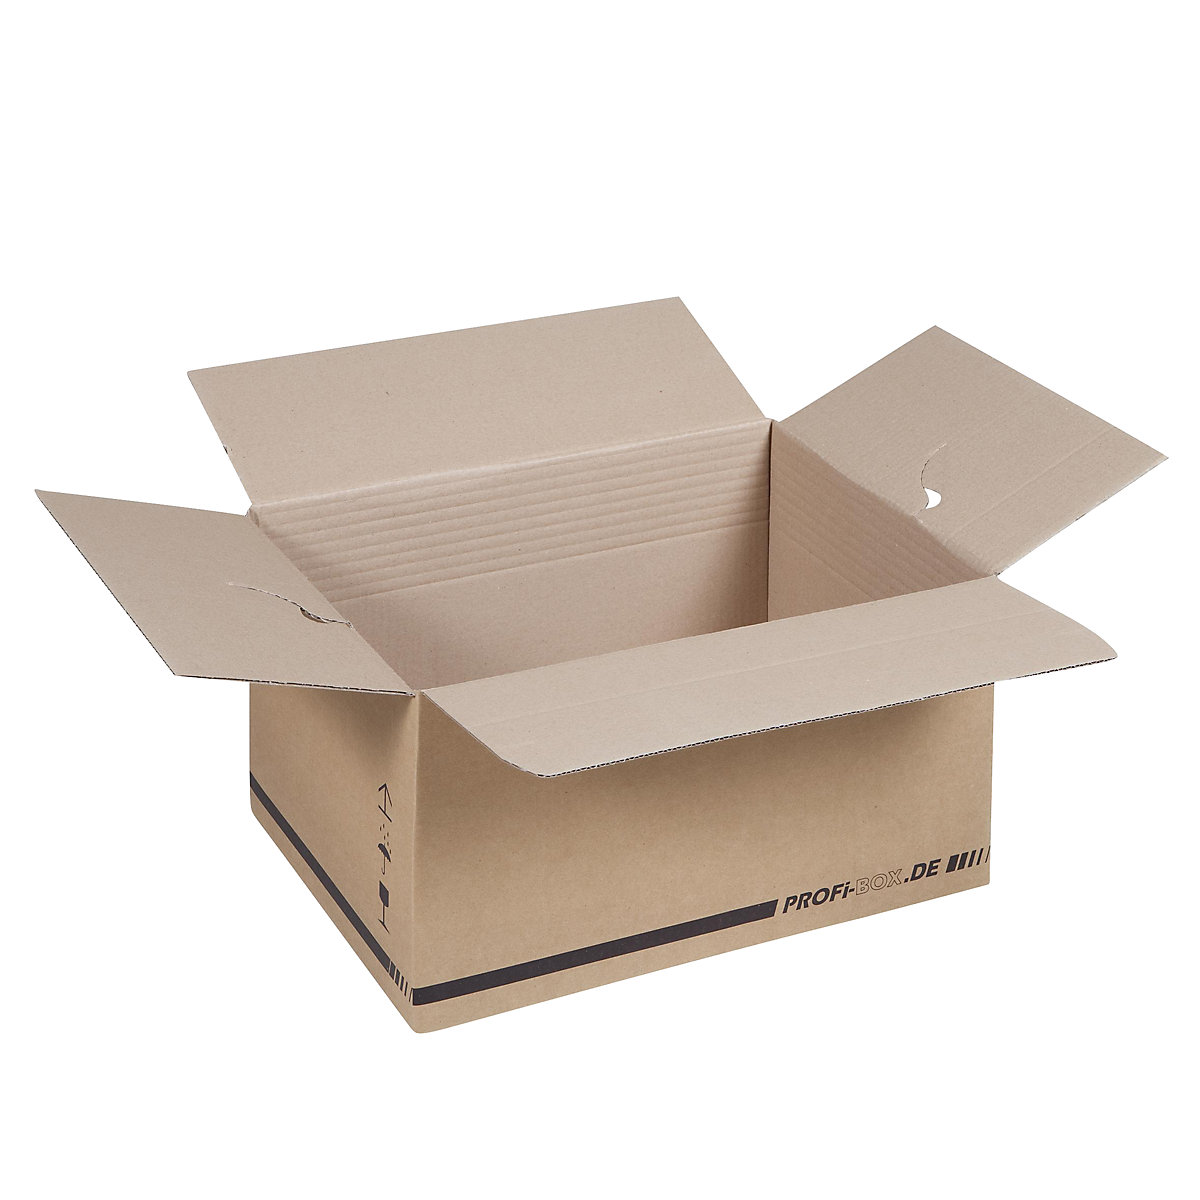 Profi-Boxen, aus 1-welliger Pappe, FEFCO 0701, Innenmaße 445 x 315 x 235 mm, VE 50 Stk-1